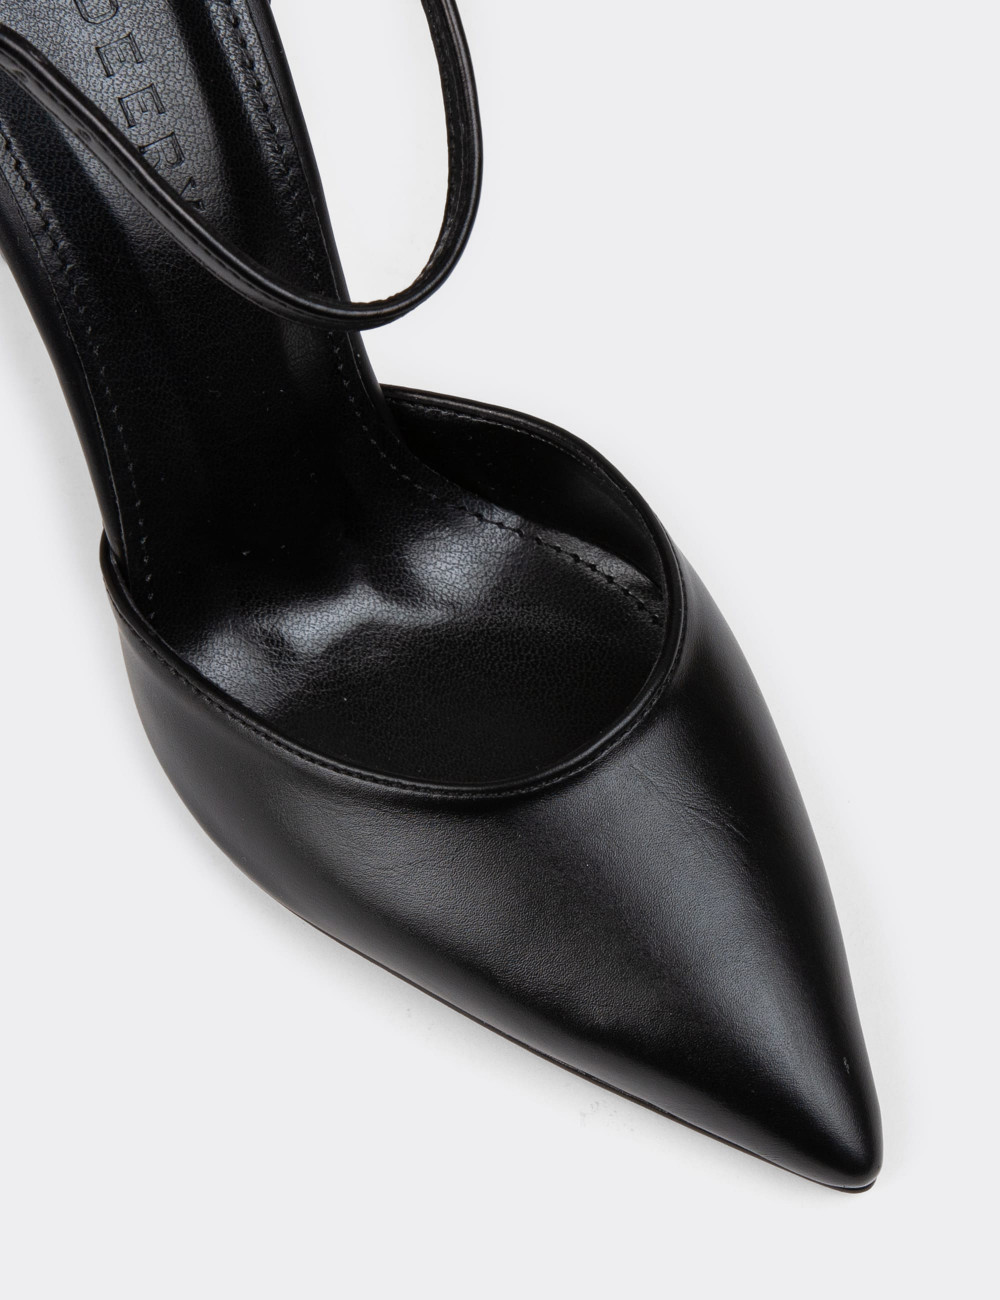 Siyah Kadın Topuklu Ayakkabı - P2091ZSYHM01